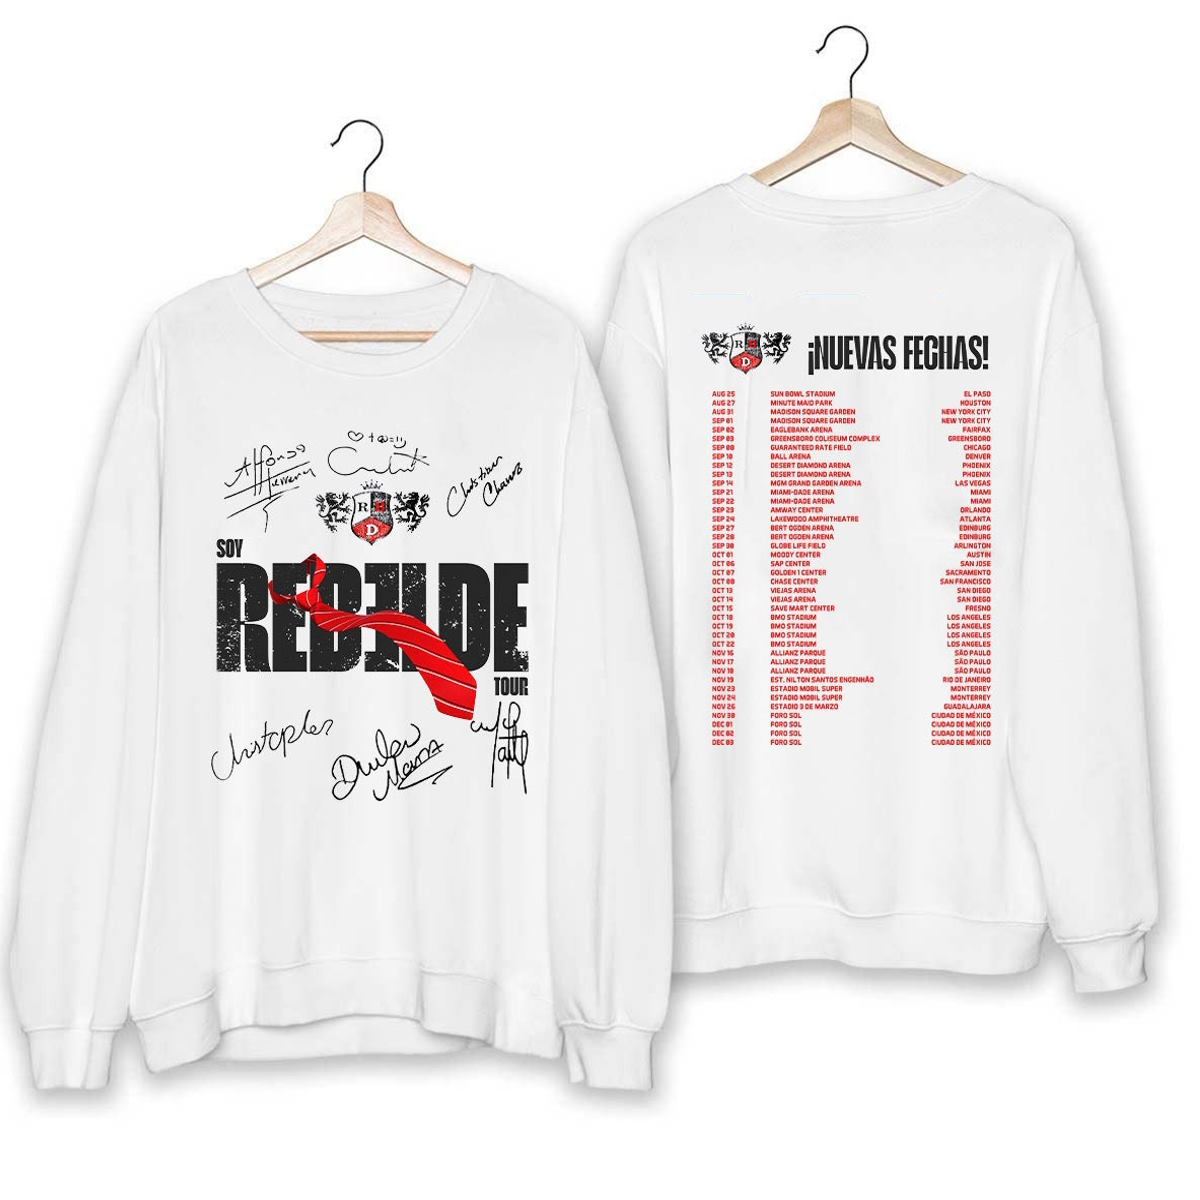 Rbd Tour Shirt, RBD Shirt Soy Rebelde Fan Shirt, RBD Tour 2023 Shirt